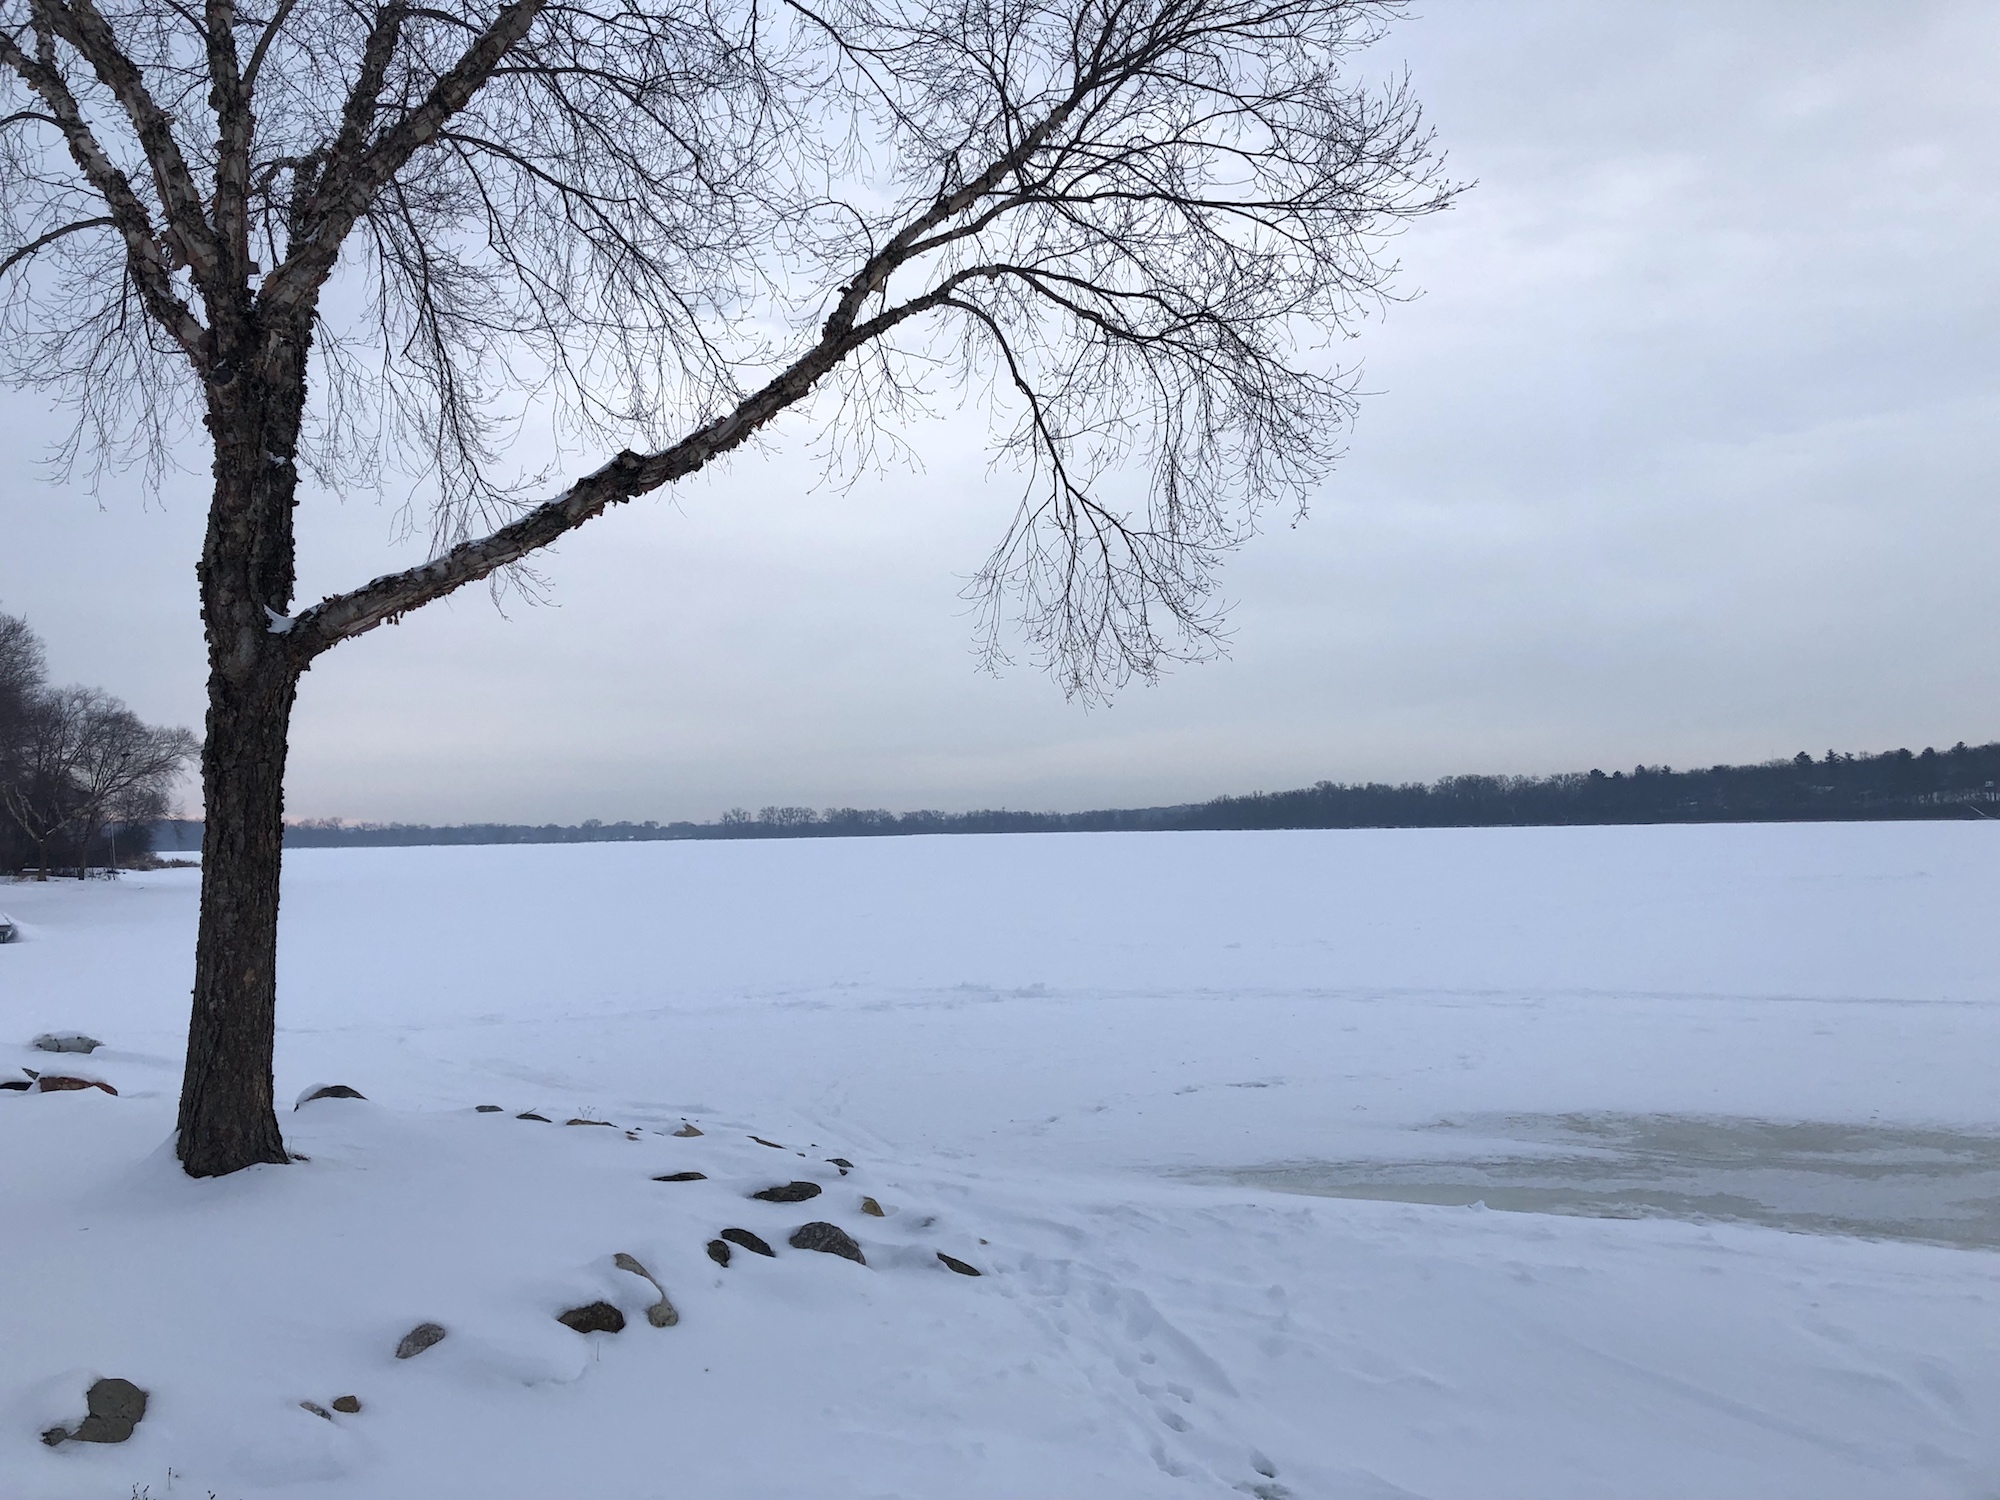 Lake Wingra on February 14, 2019.